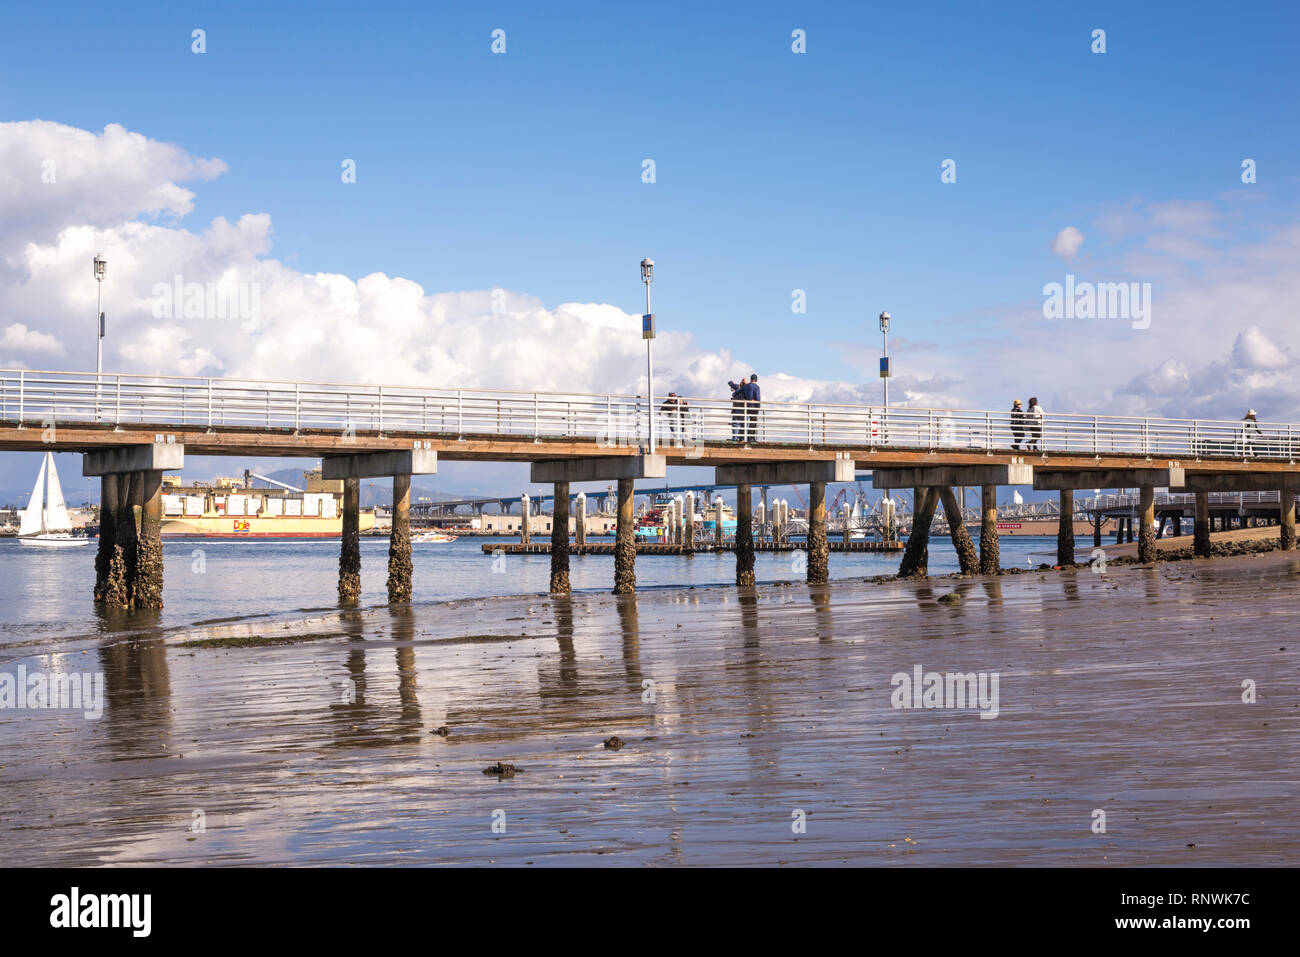 Coronado Ferry Landing Pier. Coronado, California, USA. Stock Photo